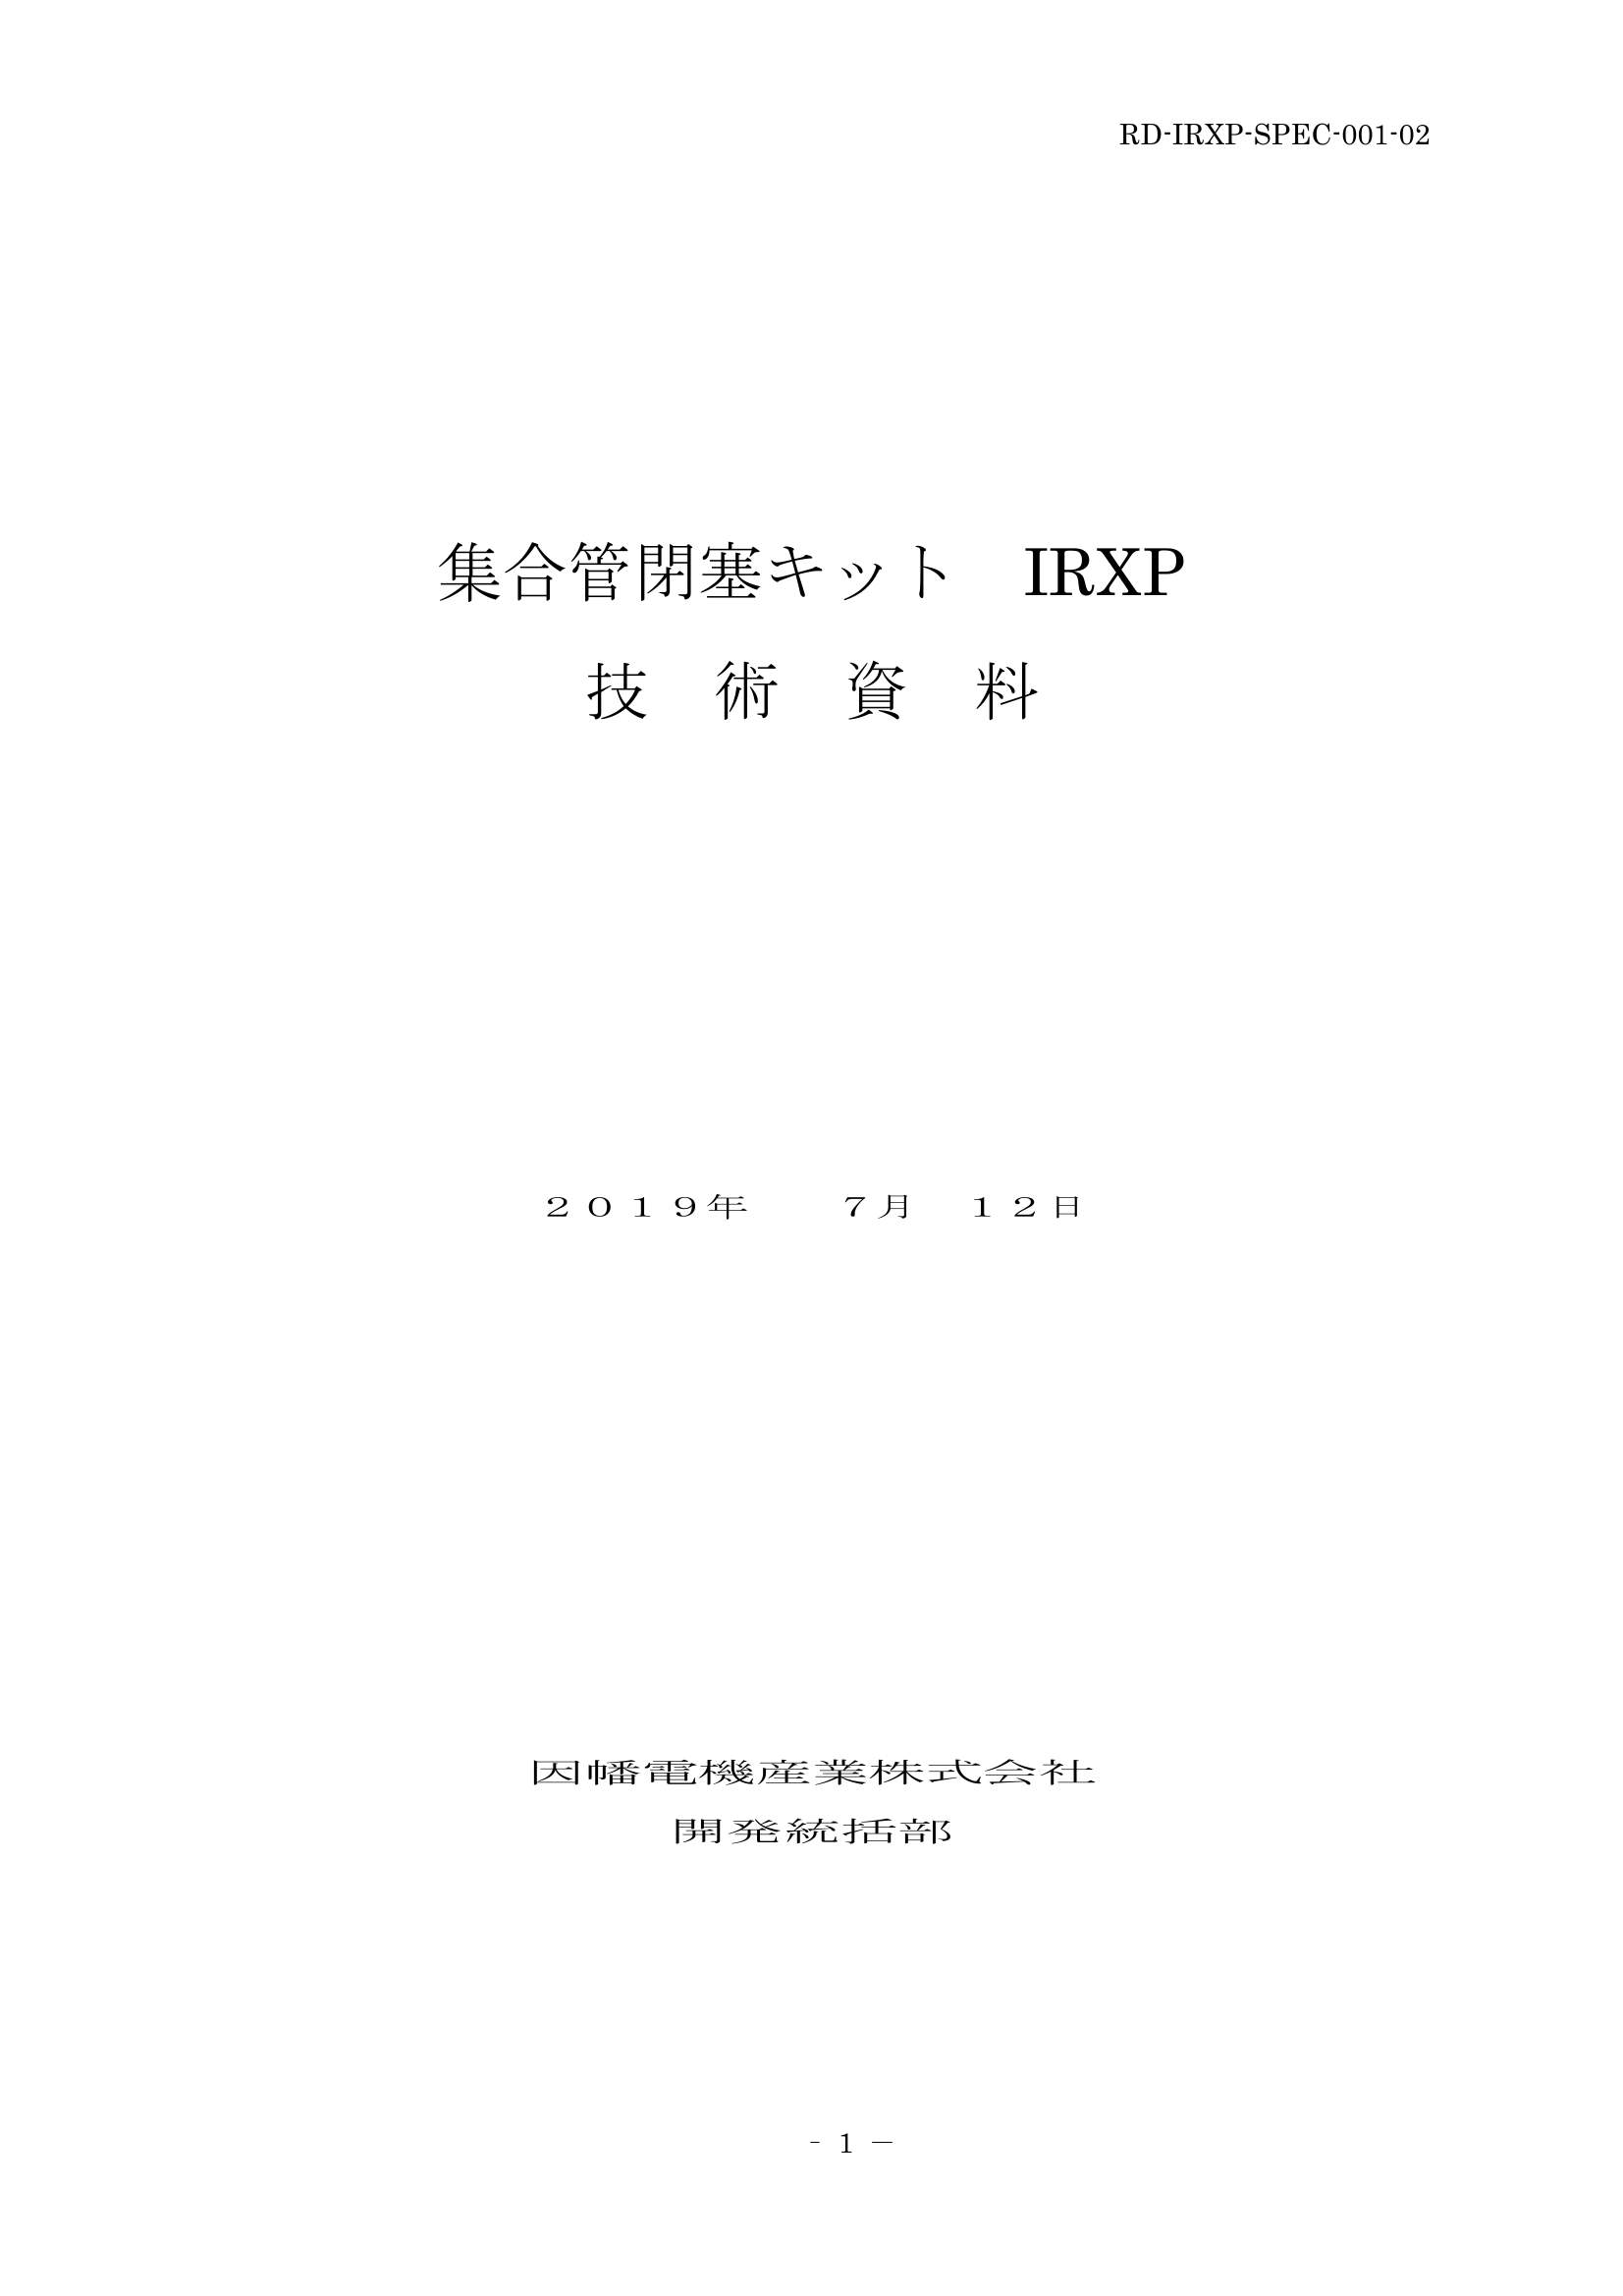 IRXP_仕様書_20190712-0W.pdf